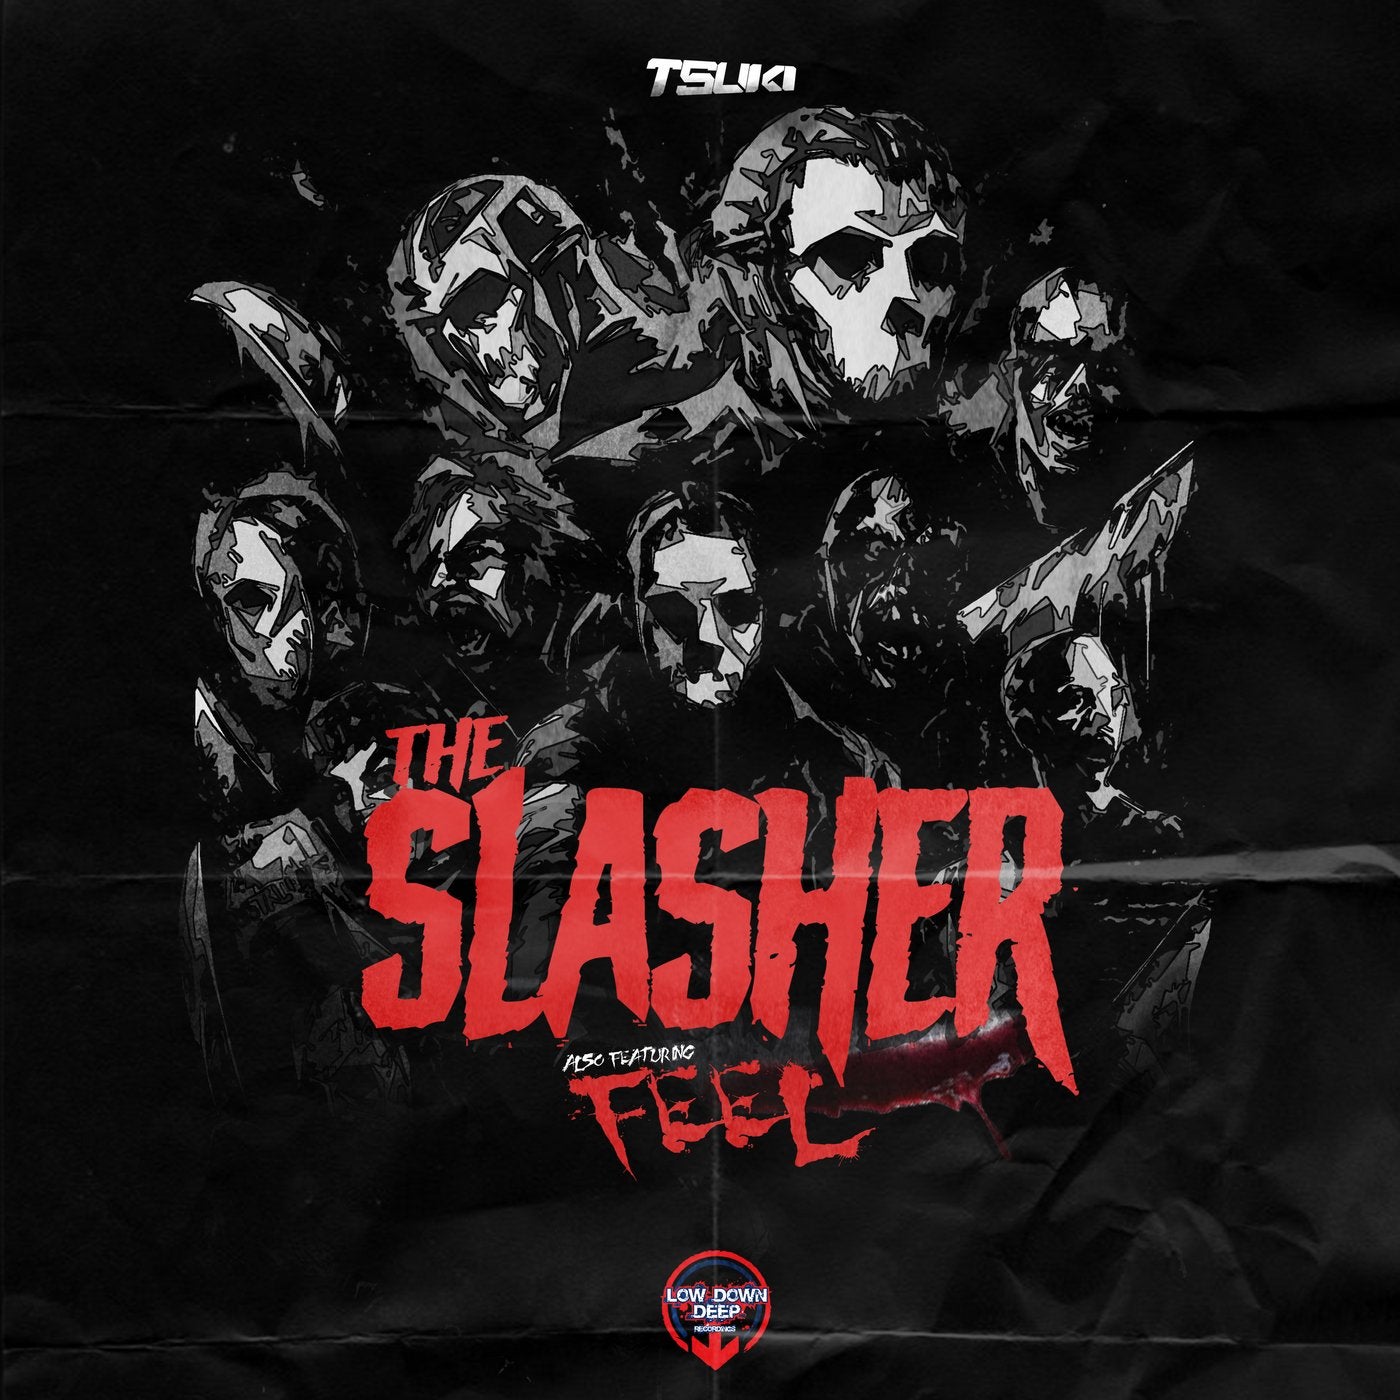 The Slasher / Feel